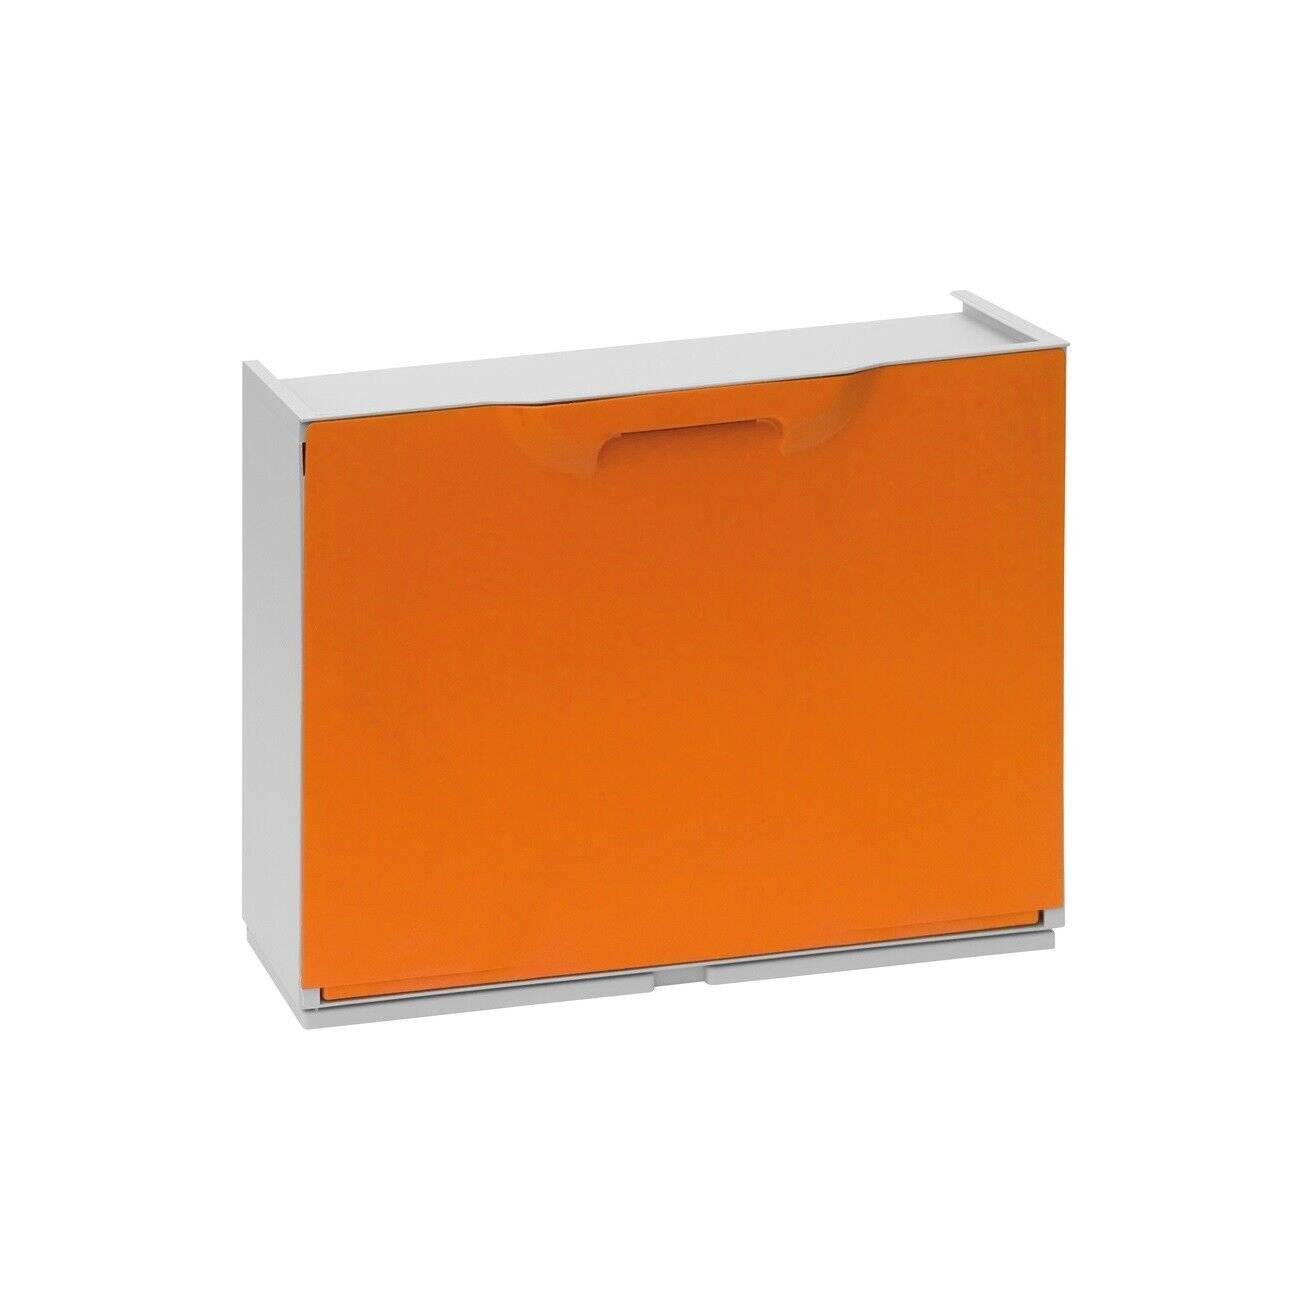 Artplast Unika Scarpiera Arancio - Organizza con Stile e Componibilità